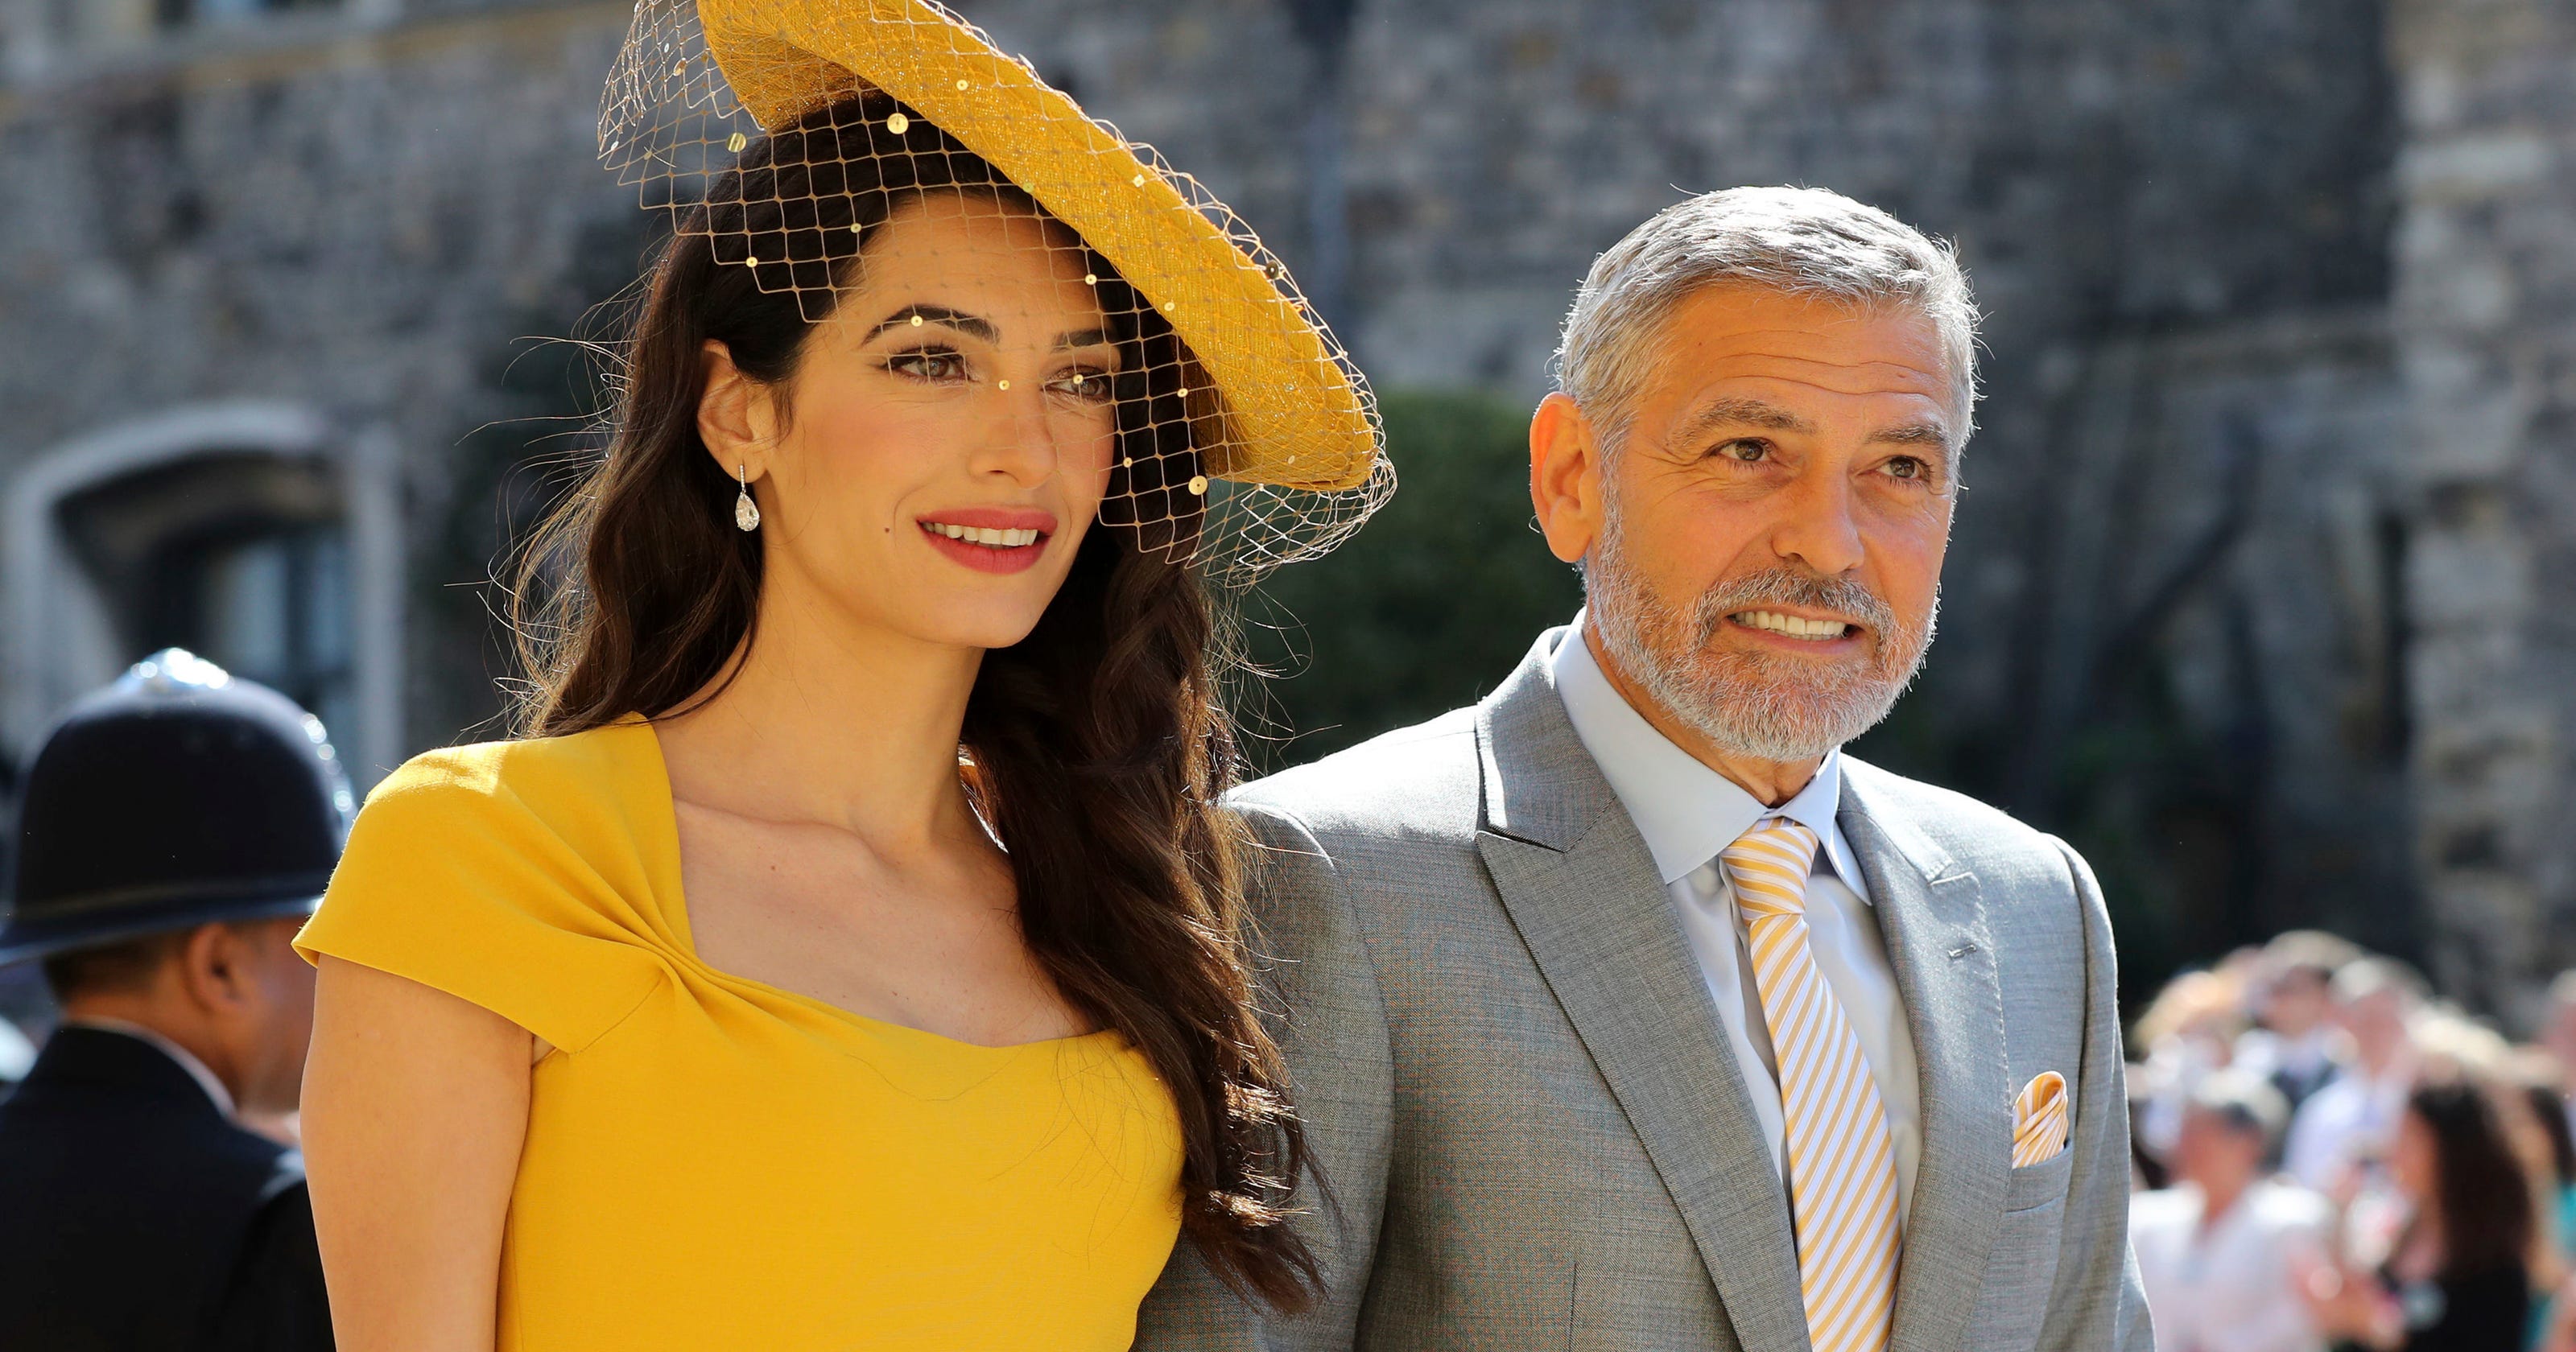 Royal wedding fashion: Amal Clooney shines in a bright ...